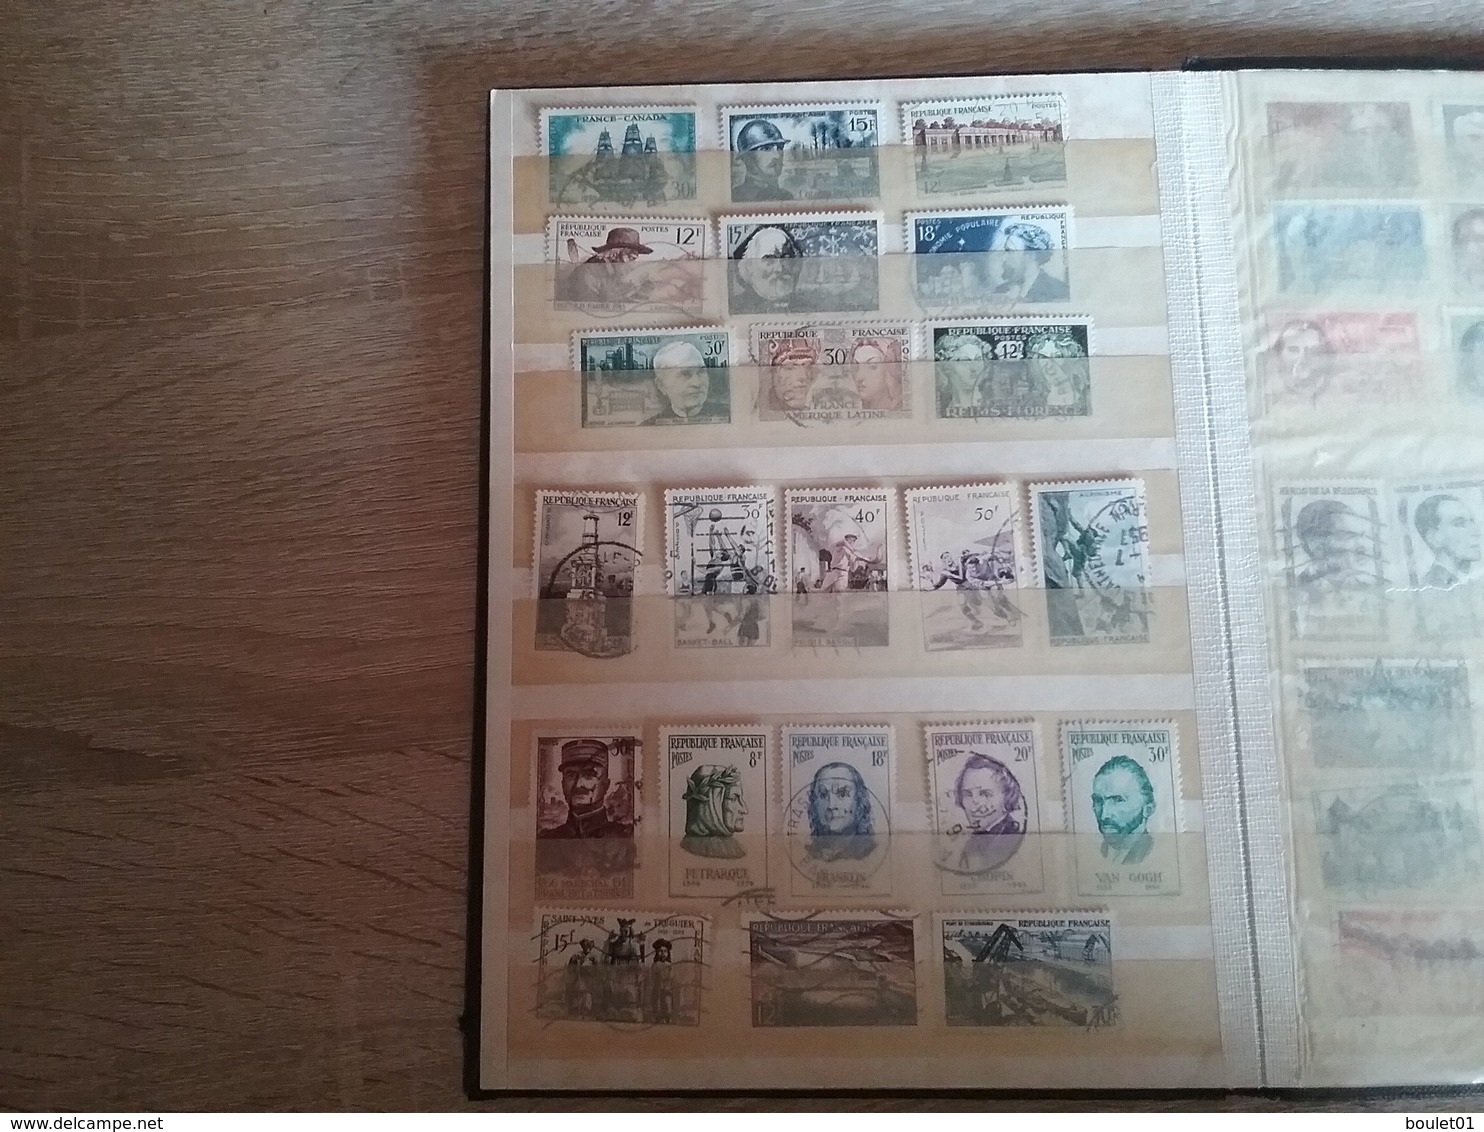 1album de timbres de France oblitèrrés de 1860 à 1958 départ à 1 euro (forte cote)